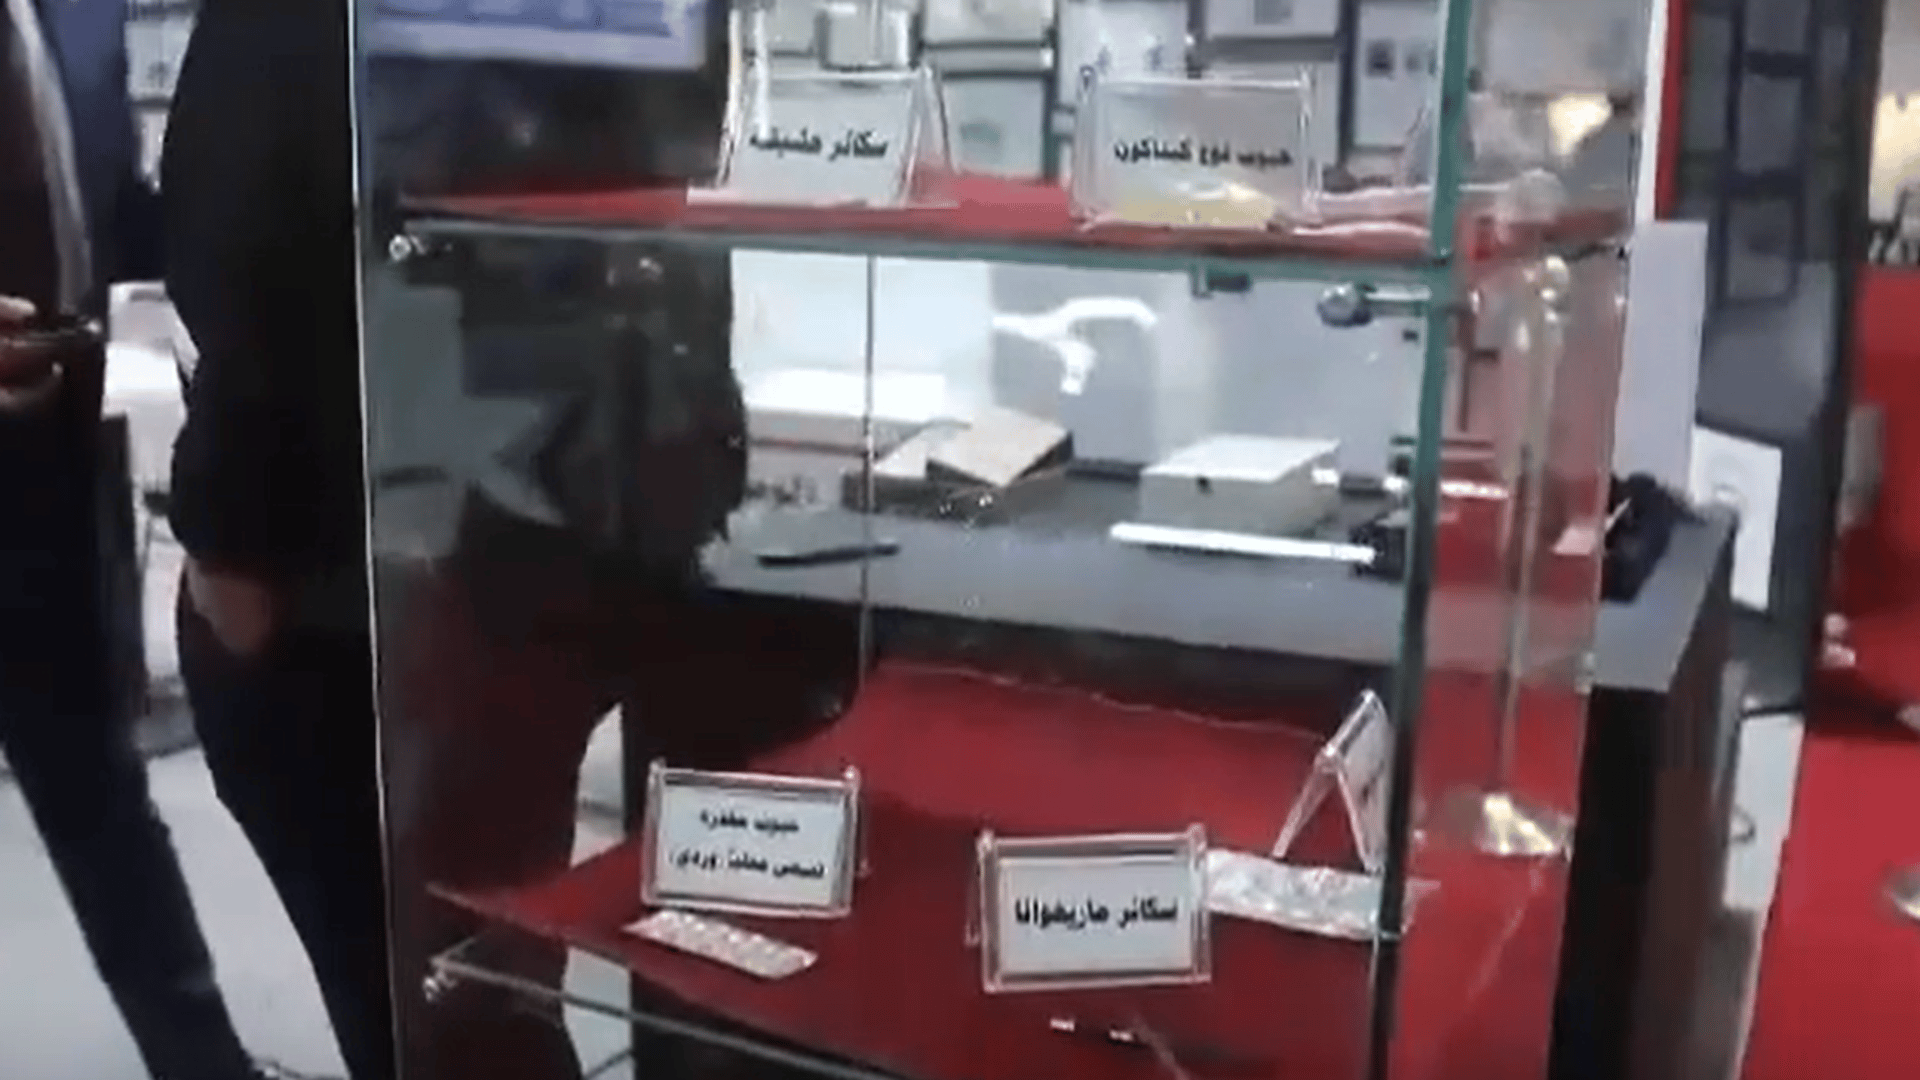 منتسب ملثم يعرّفك على أنواع المخدرات.. فيديو من جناح الأمن الوطني في معرض بغداد